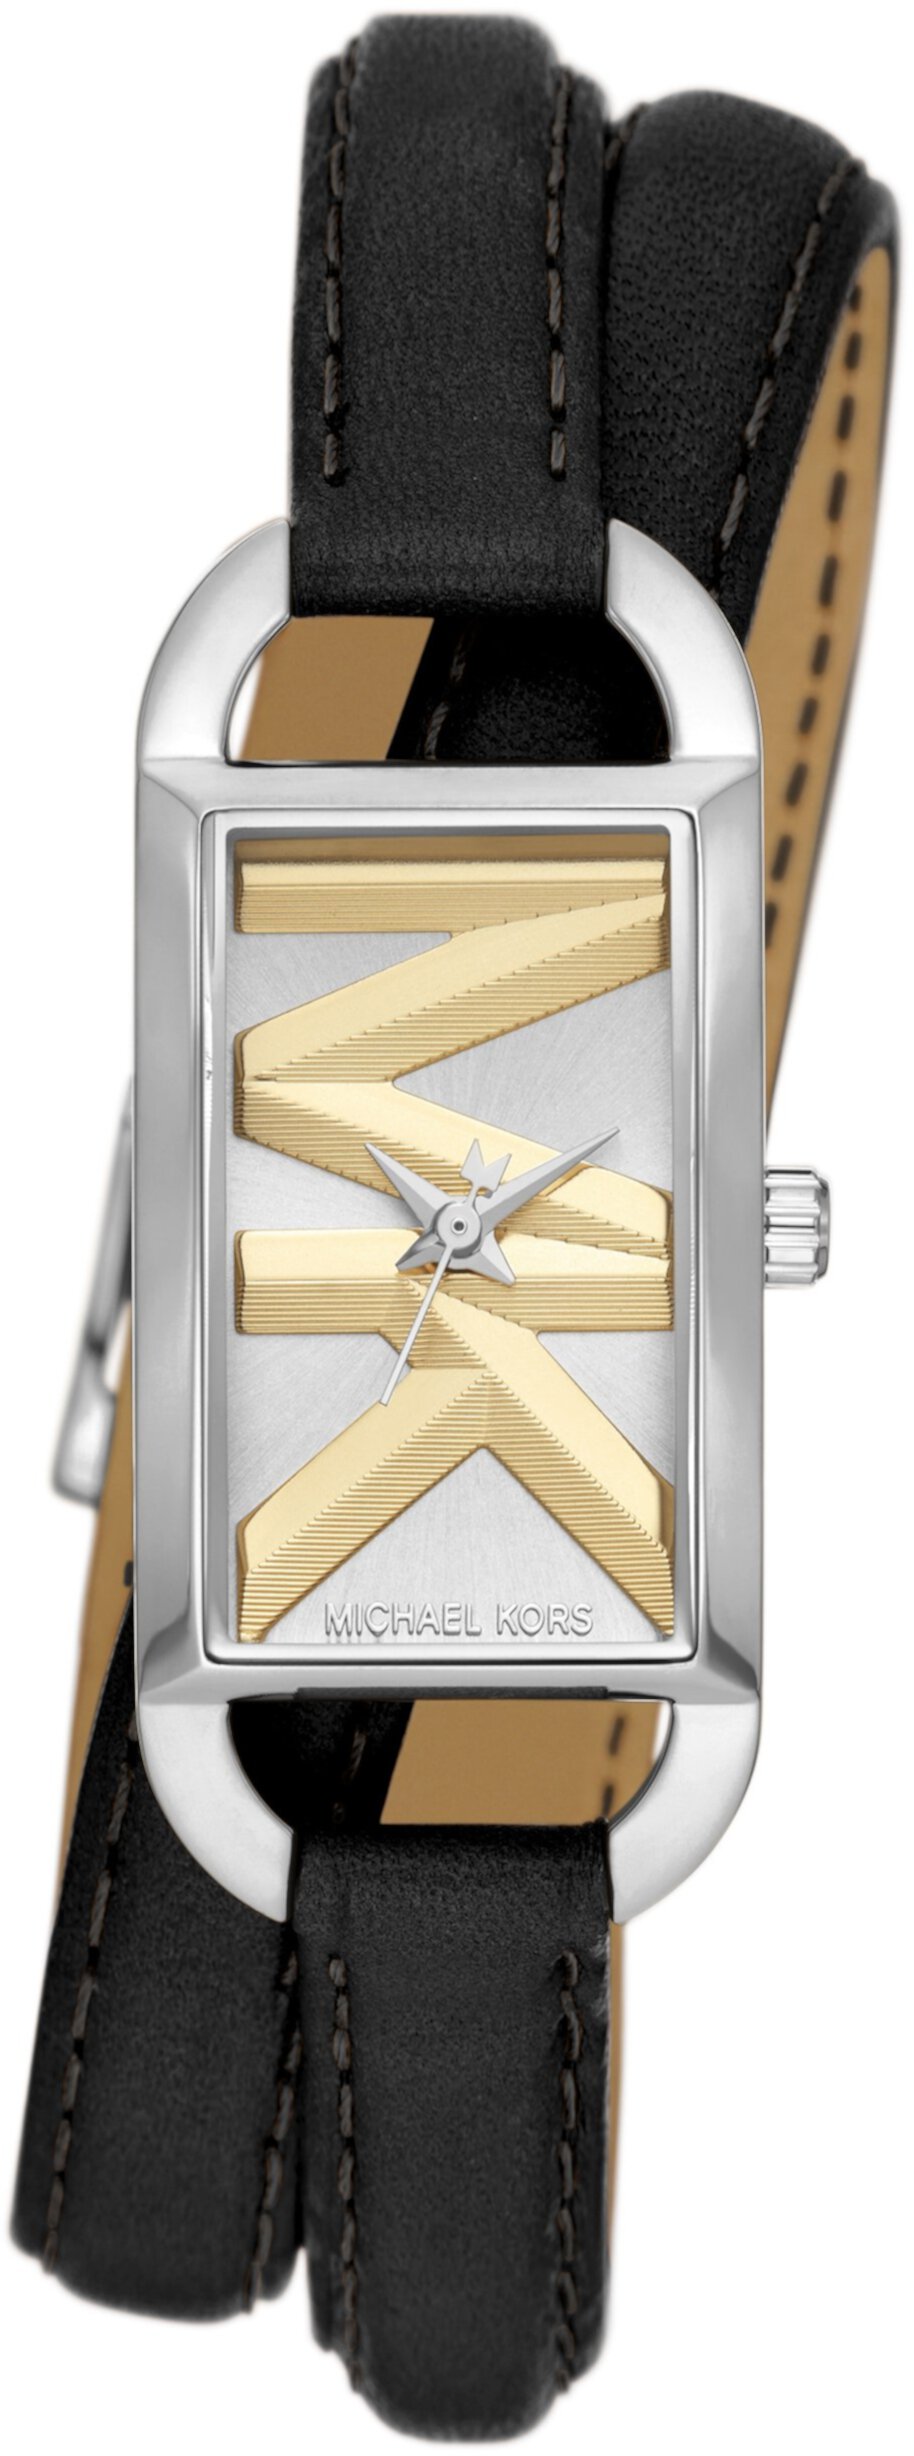 MK4722 — Кожаные часы Empire с тремя стрелками и двойной оберткой Michael Kors